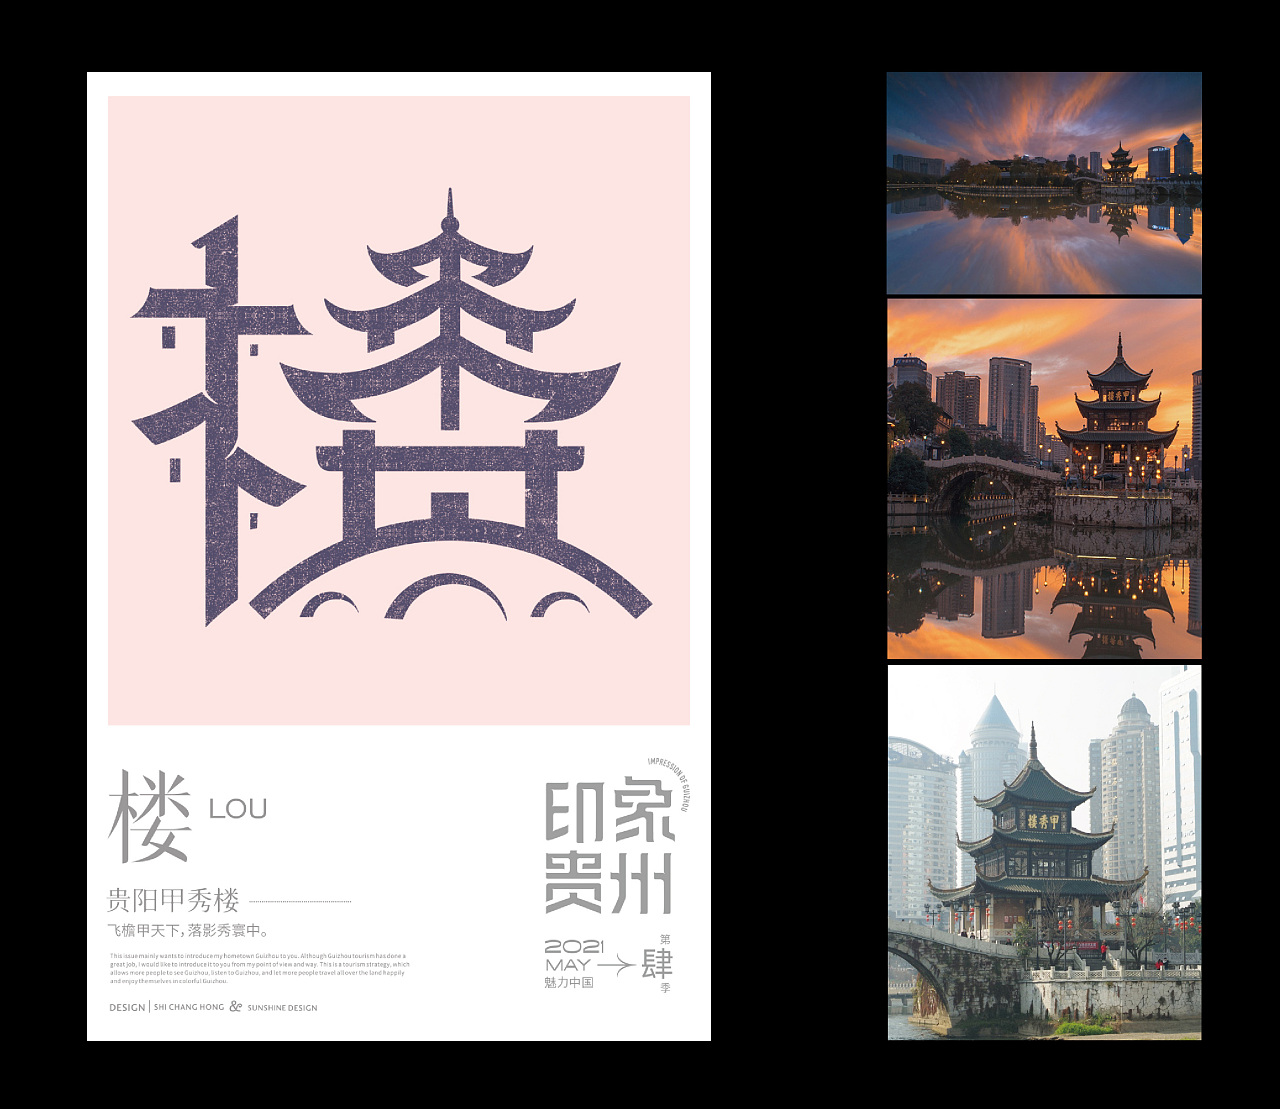 上行设计 / 石昌鸿魅力中国第4季---《印象贵州》